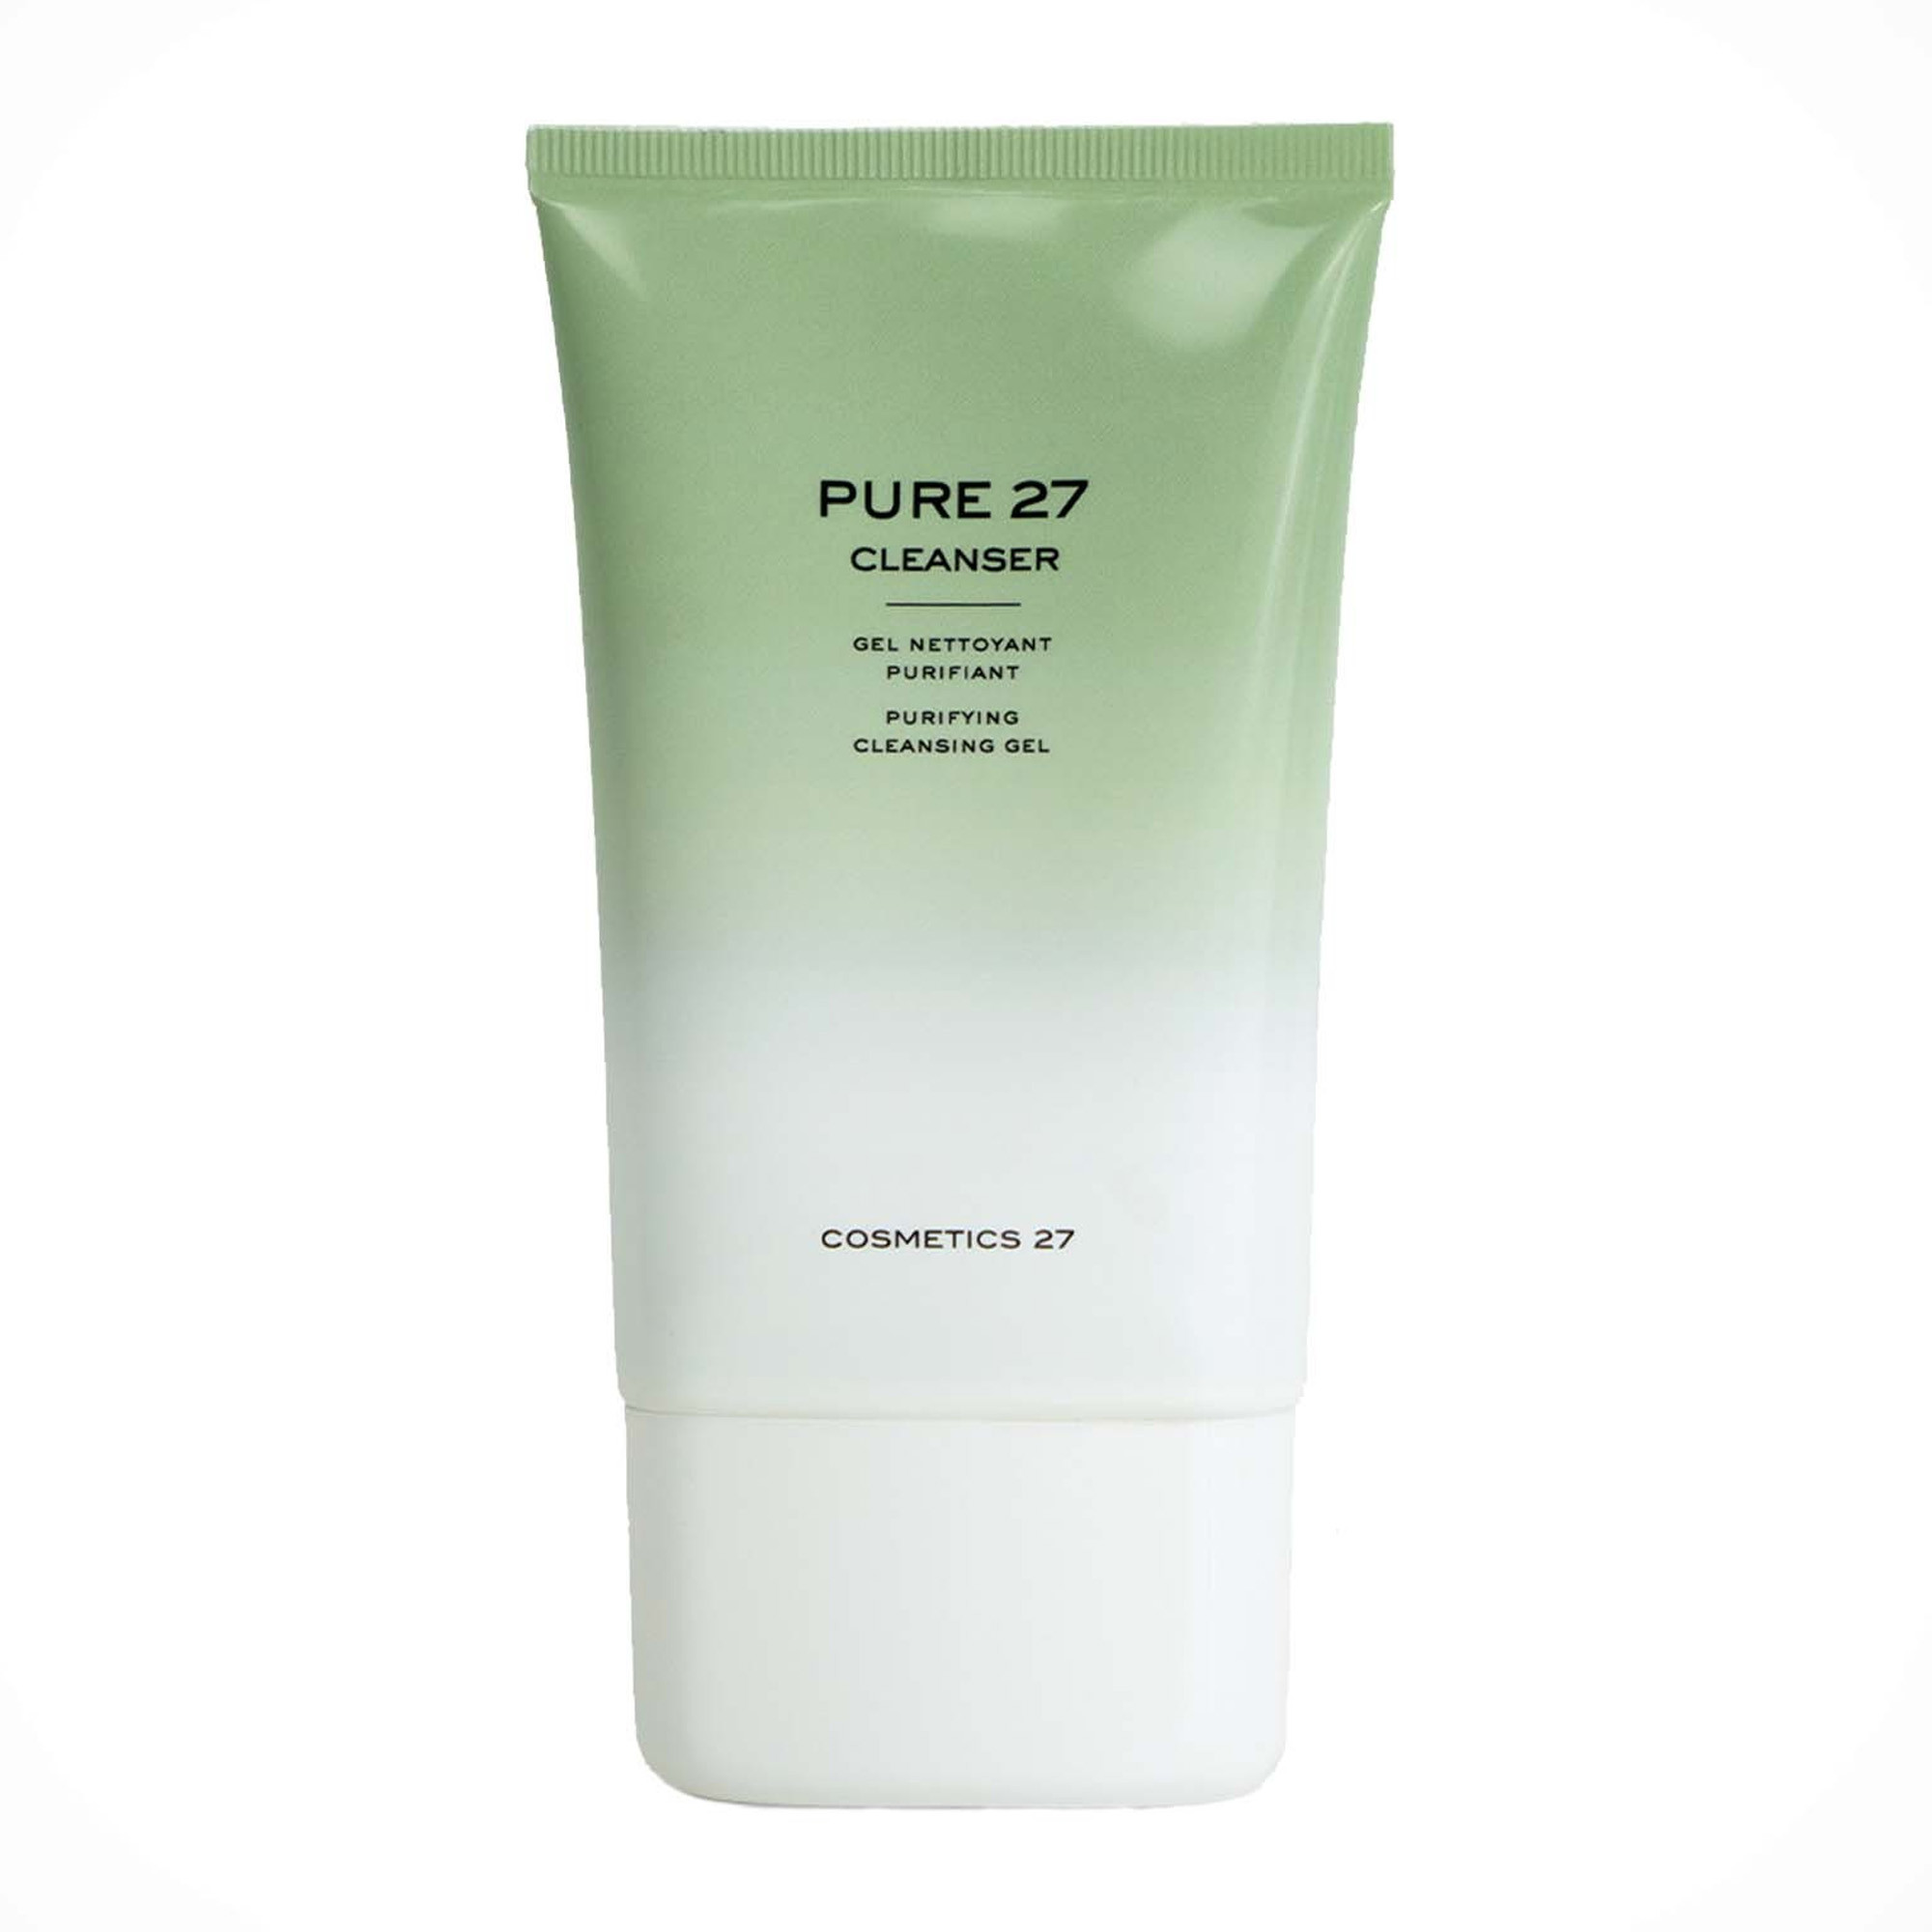 Cosmetics 27 Pure 27 Cleanser - Очищающий гель для проблемной кожи